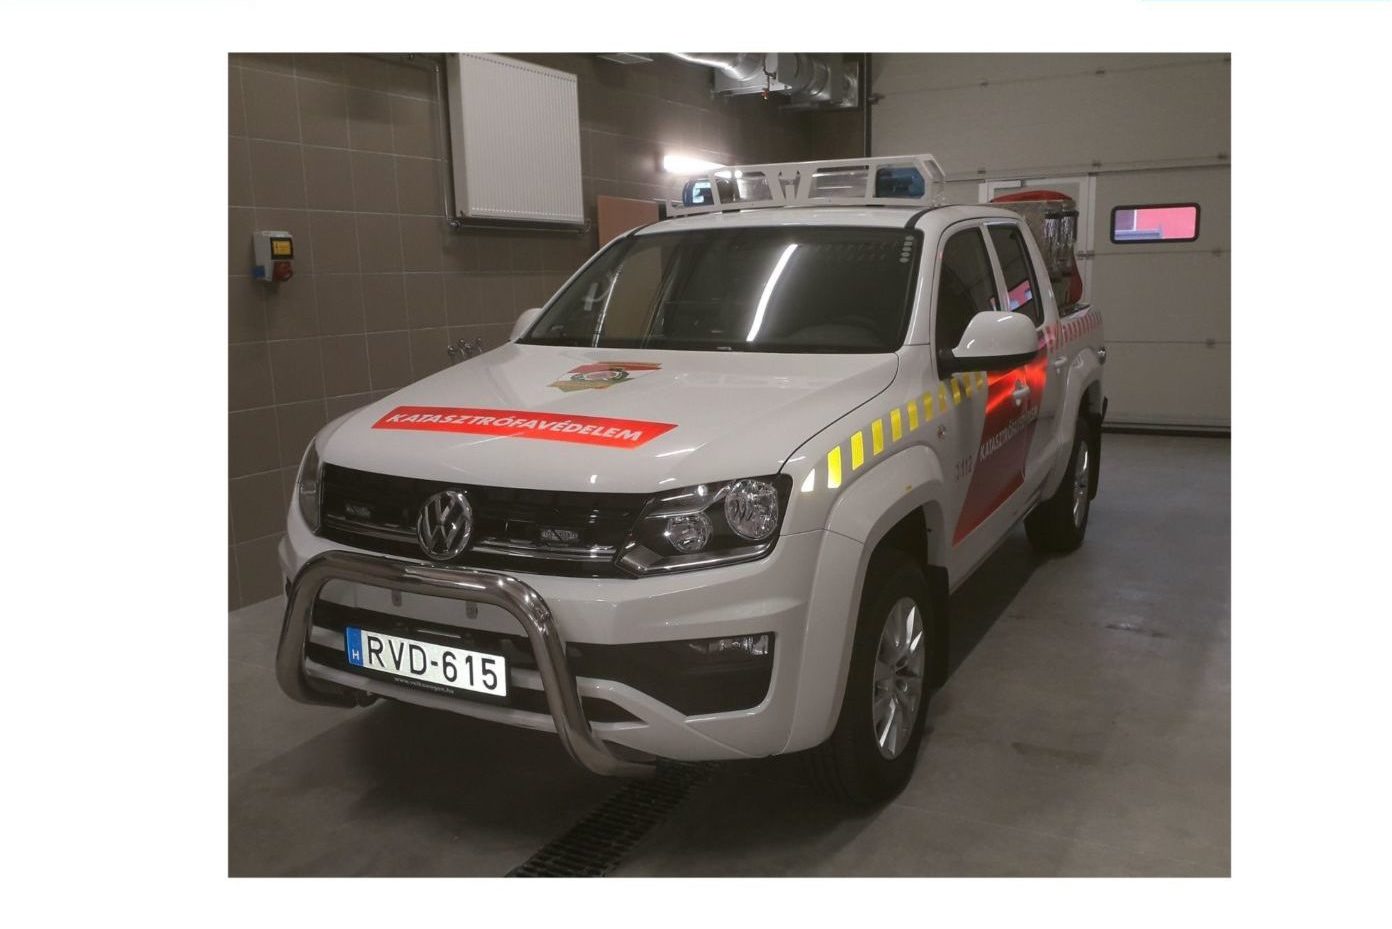 Új gépjármű segíti a tűzoltási munkálatokat Kiskőrös térségében